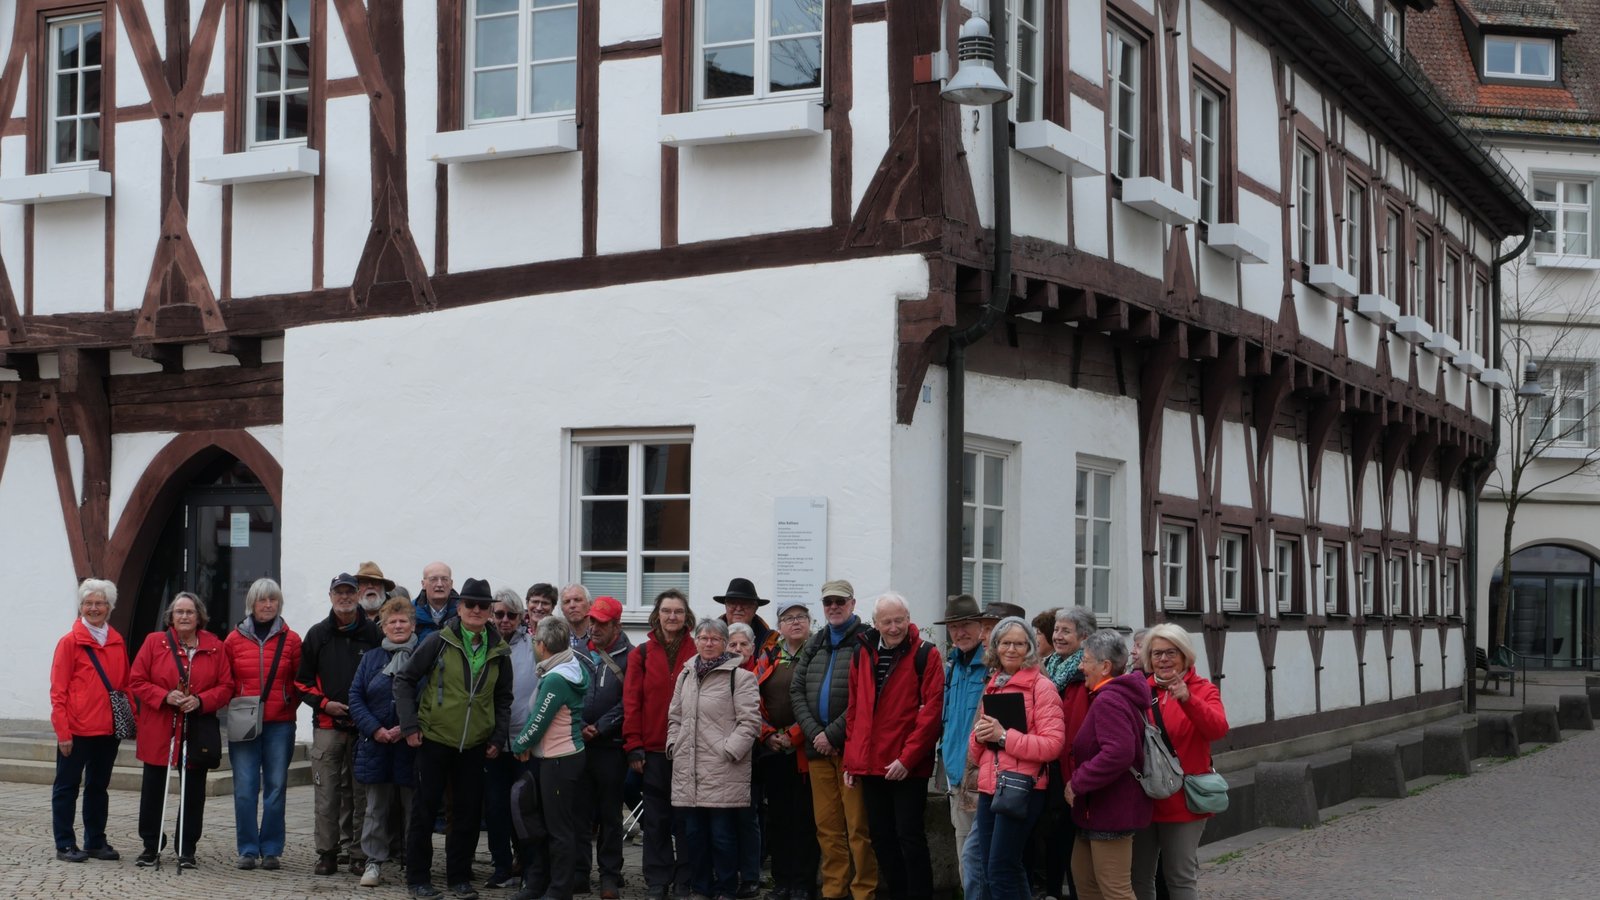 Städtewanderung in Biberach: Das Angebot des Bürger-Treffs und der Enzweihinger Albvereinsortsgruppe kommt sehr gut an.  Foto: p